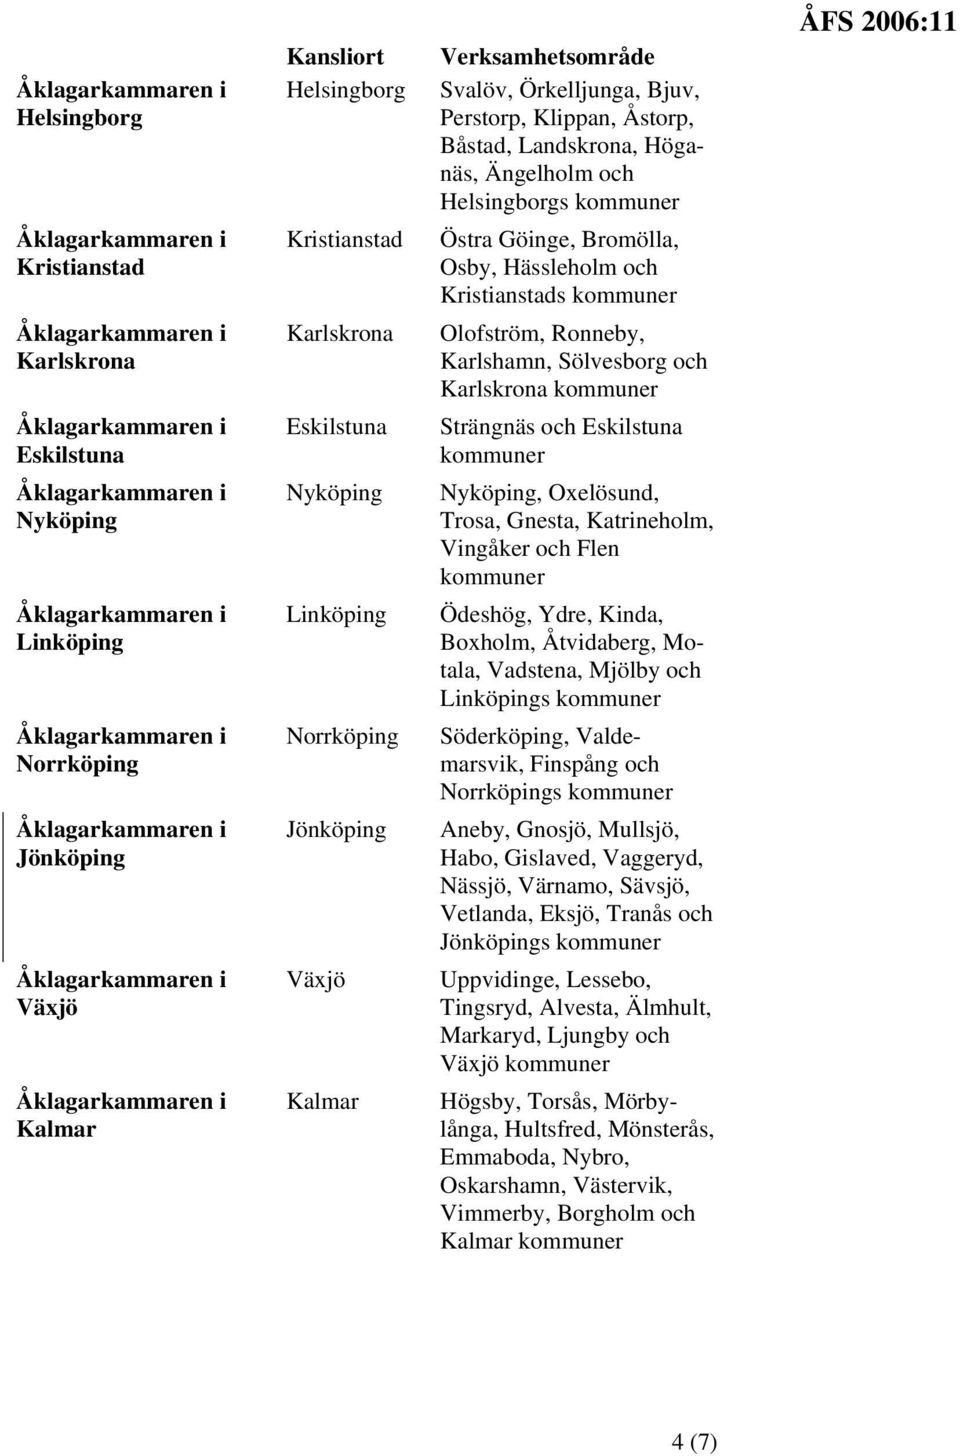 Sölvesborg och Karlskrona Strängnäs och Eskilstuna Nyköping, Oxelösund, Trosa, Gnesta, Katrineholm, Vingåker och Flen Ödeshög, Ydre, Kinda, Boxholm, Åtvidaberg, Motala, Vadstena, Mjölby och